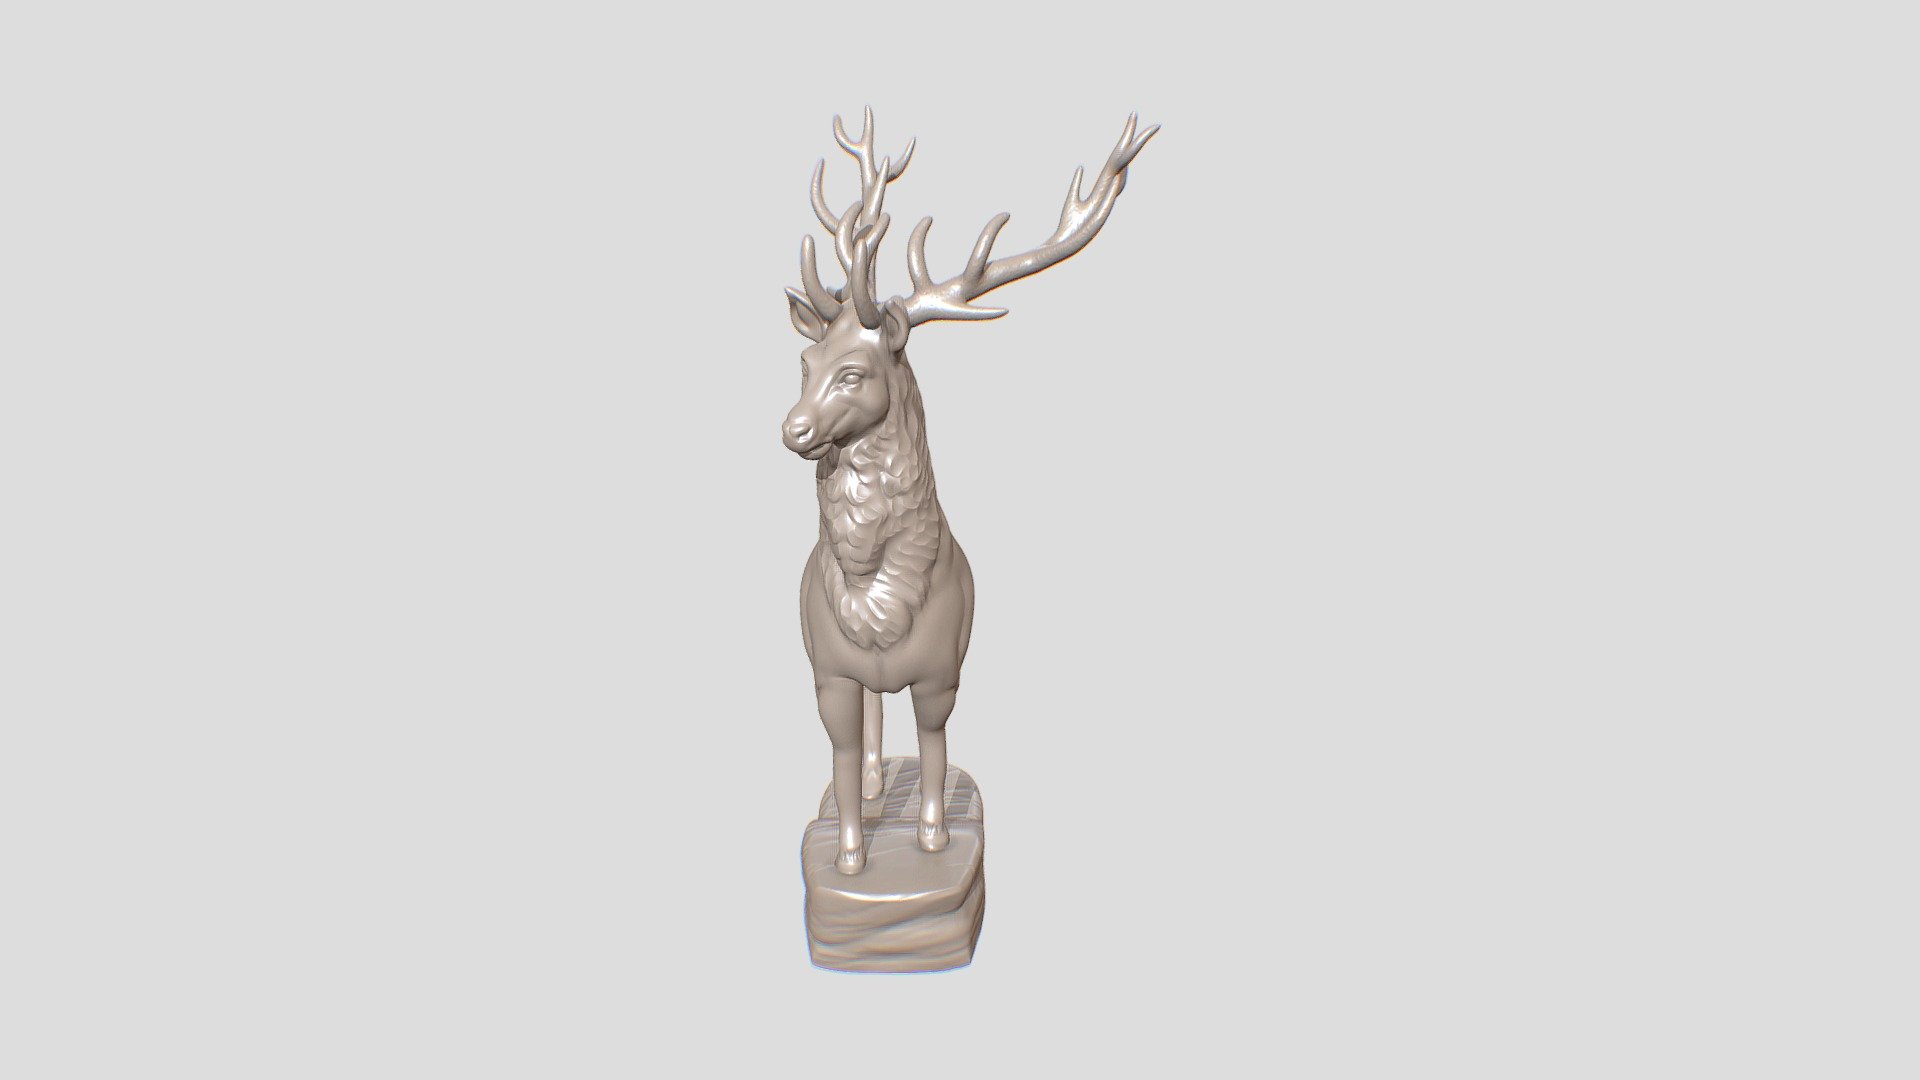 A deer 3d printable model based on the deer sculpture in Park of Checkman in Khmelnitsky 3d model